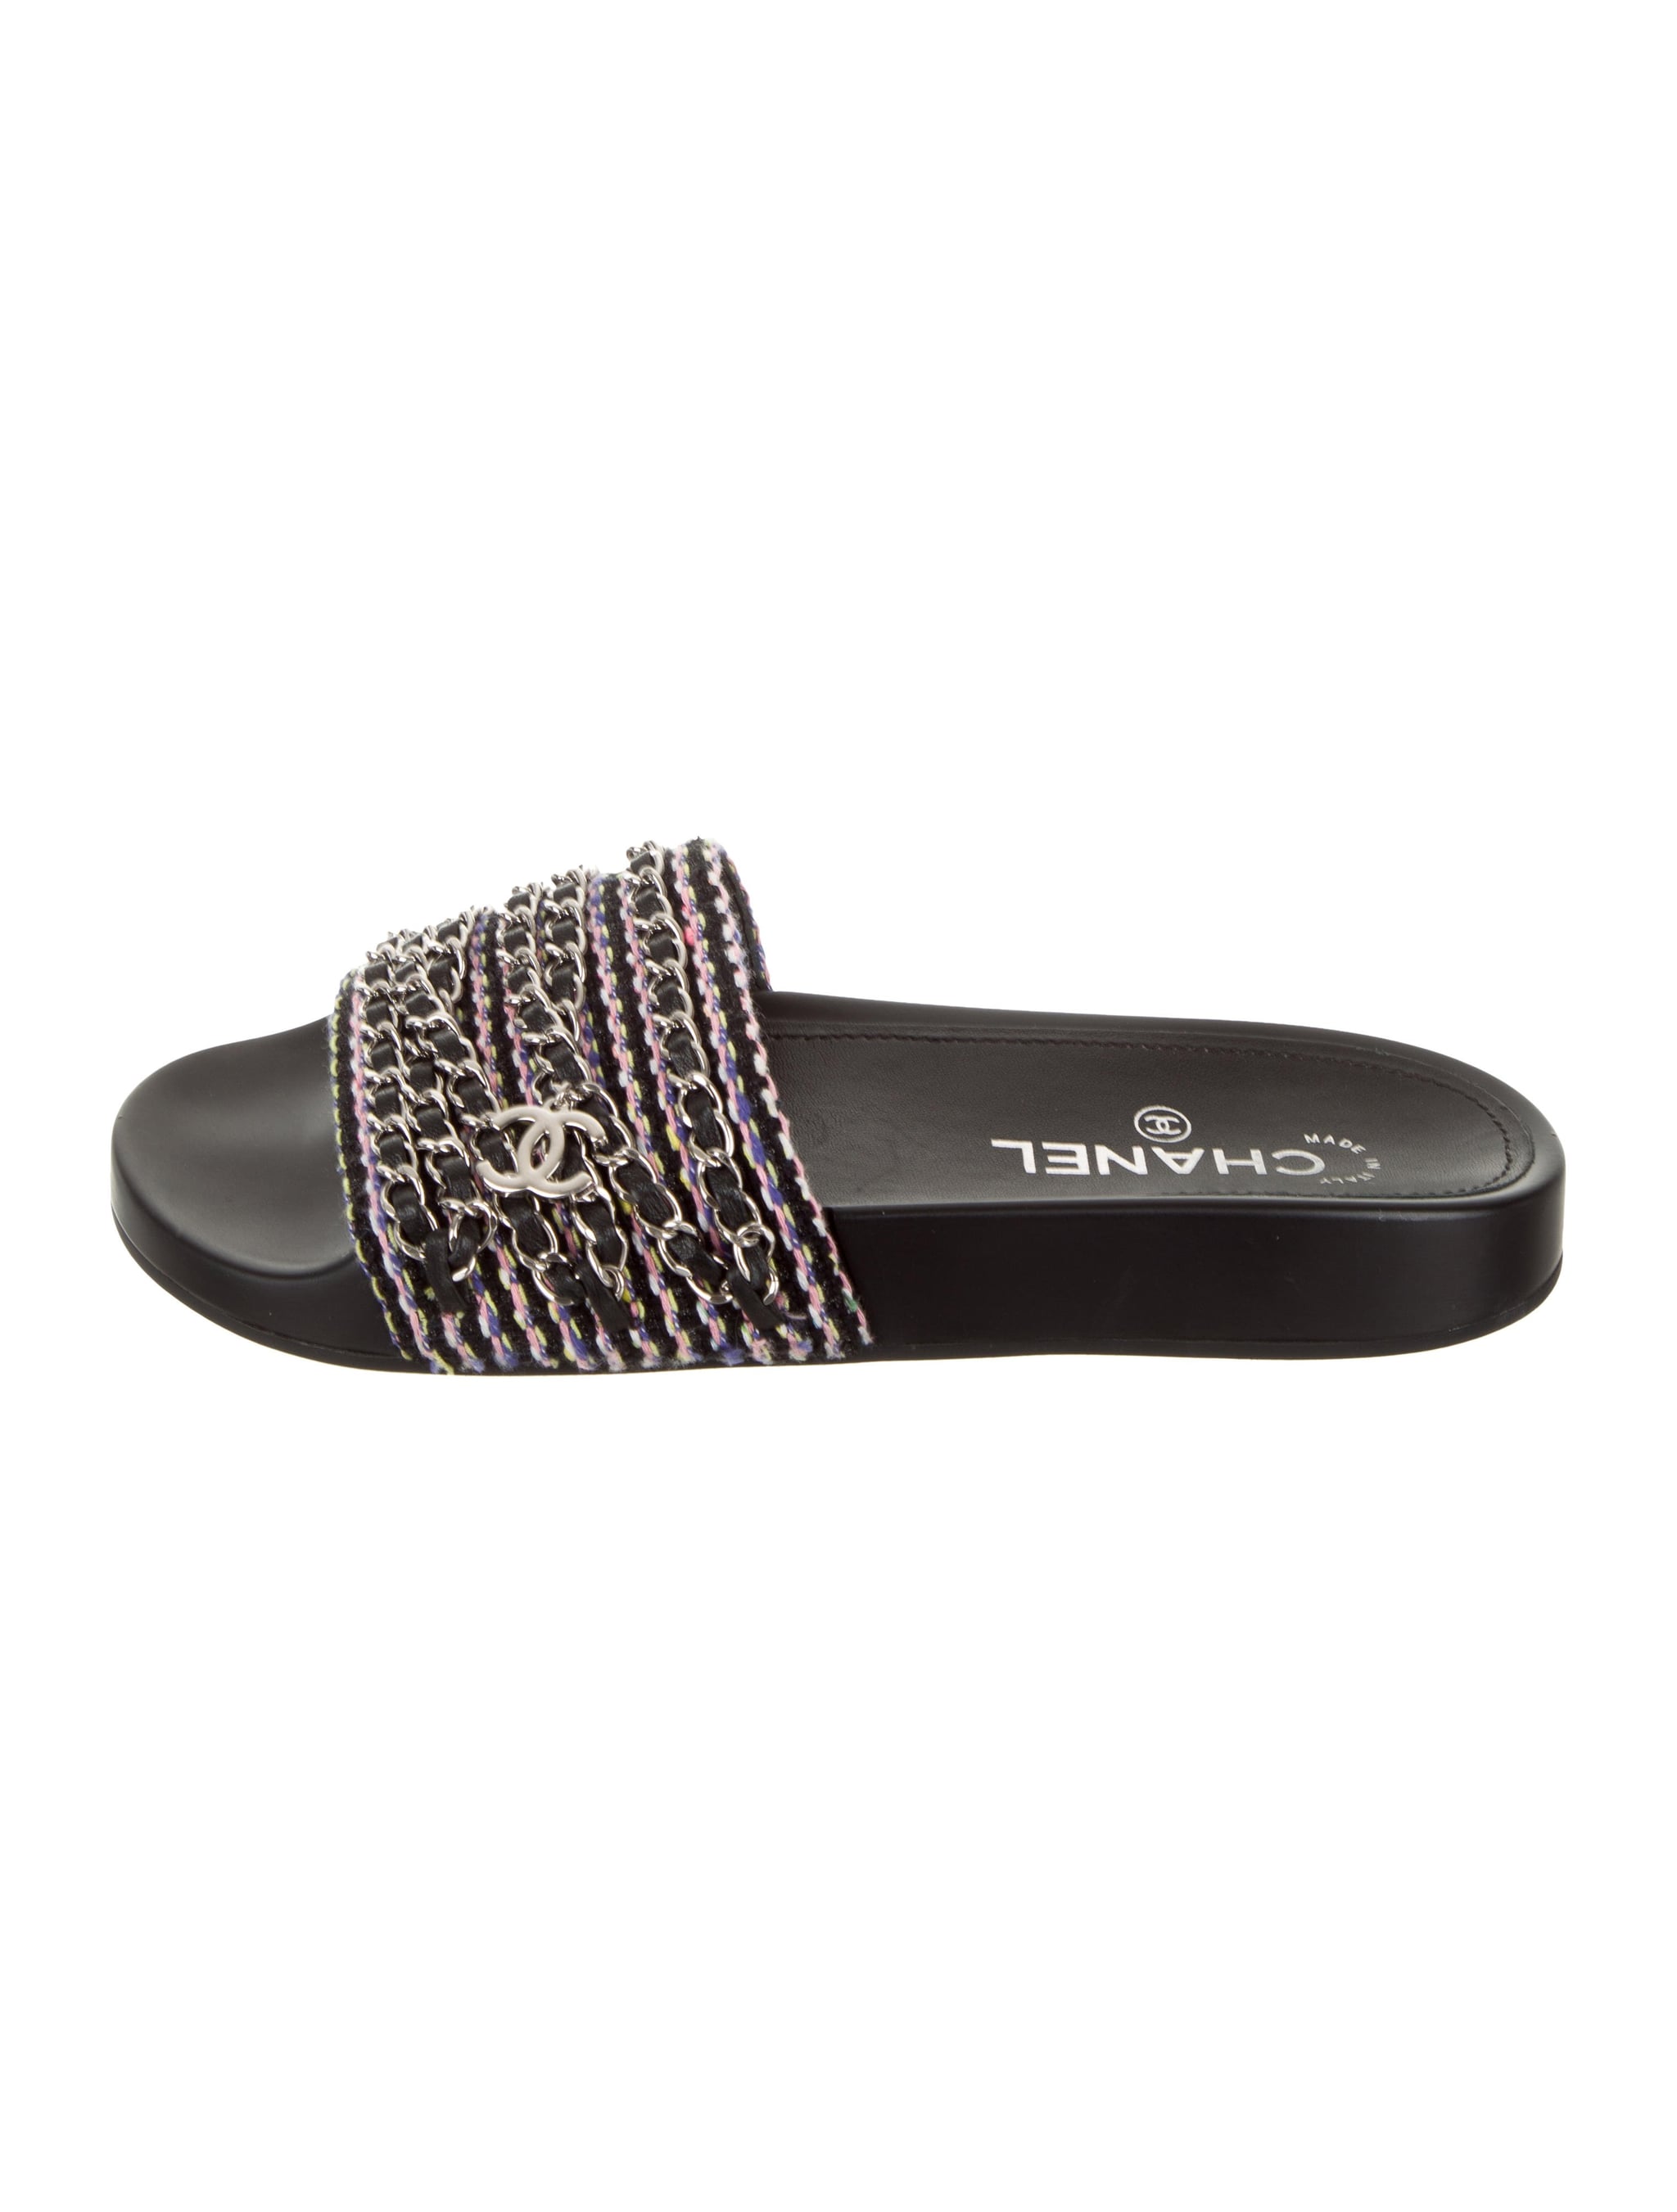 Buy Elegance Elefoot Womens Wedges Black l sandels l womens sandels l  bridal sandels Online at Best Prices in India - JioMart.